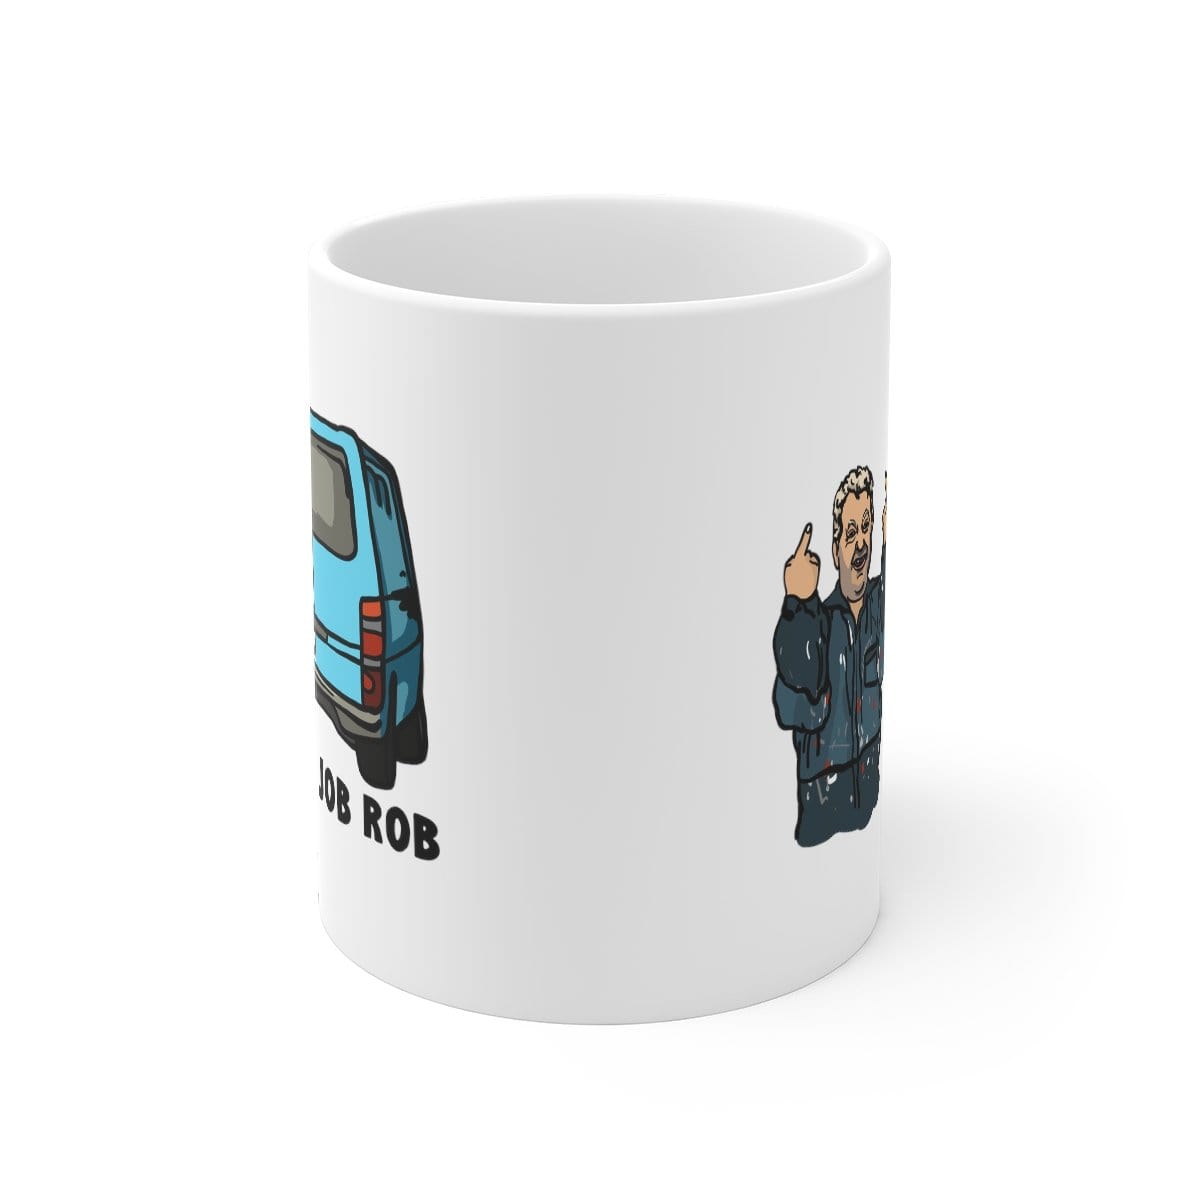 Half Job Rob 🤬 - Coffee Mug